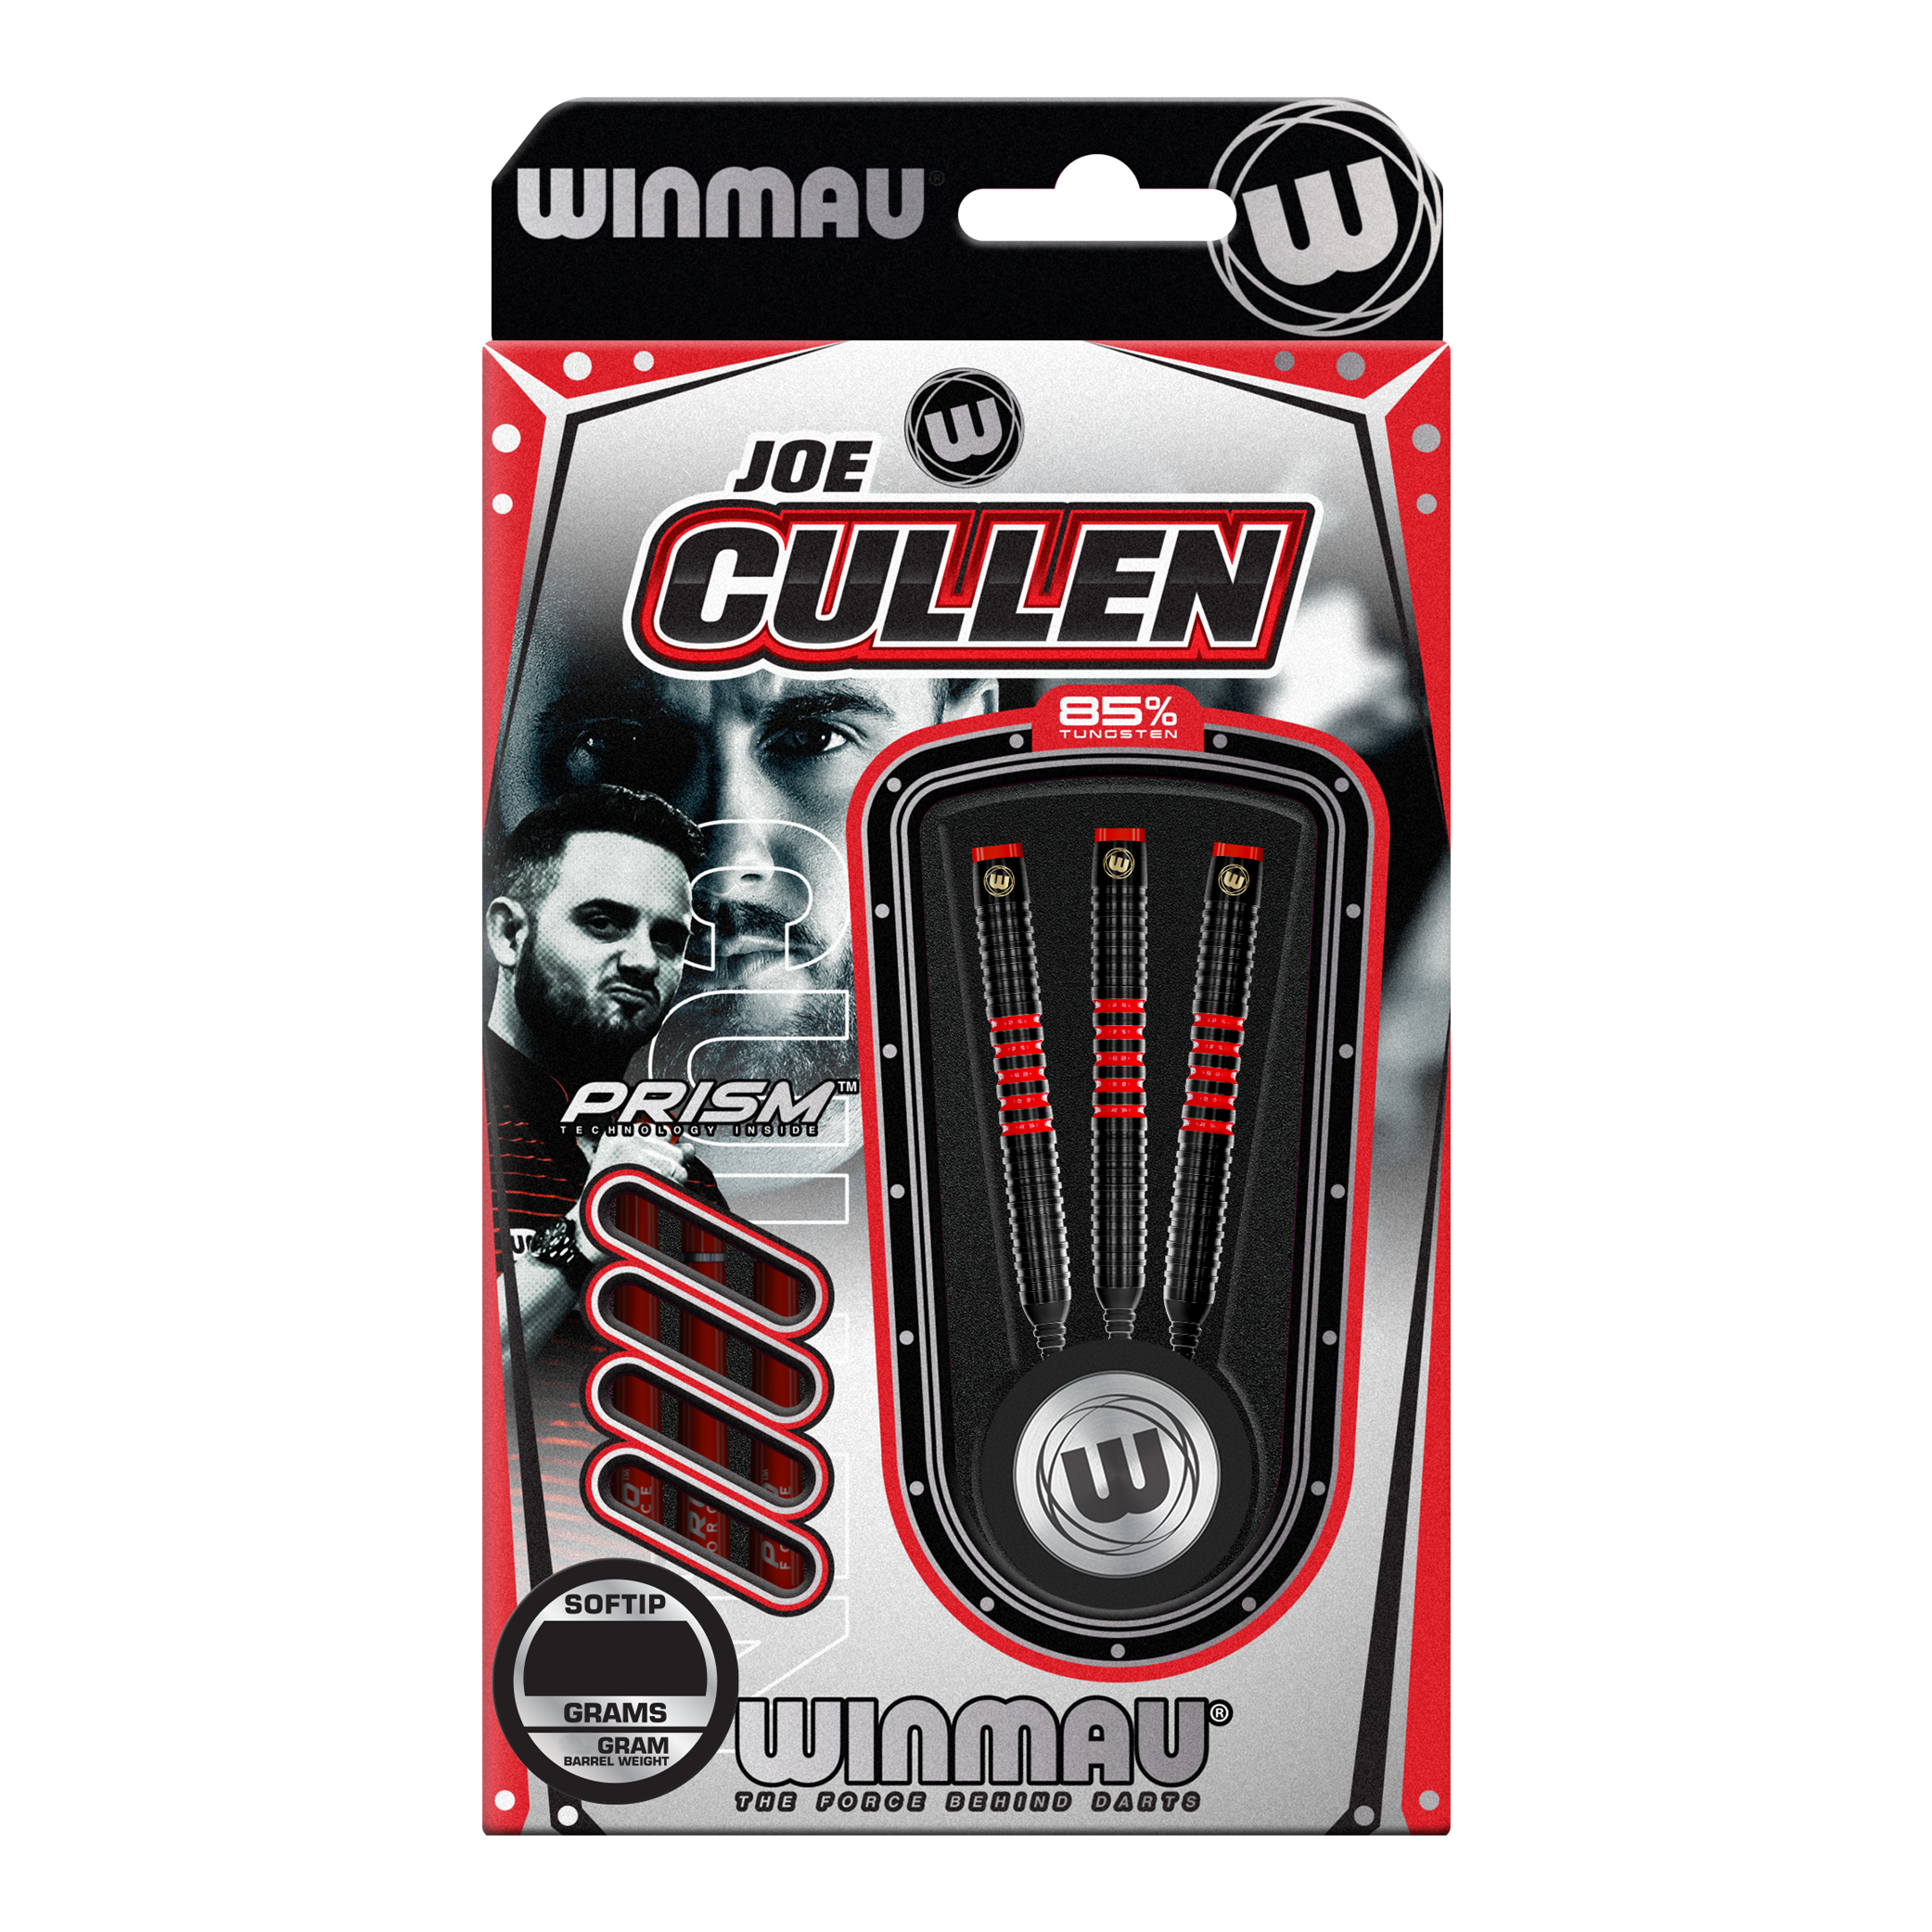 Winmau Joe Cullen 85 Pro-Series zachte darts